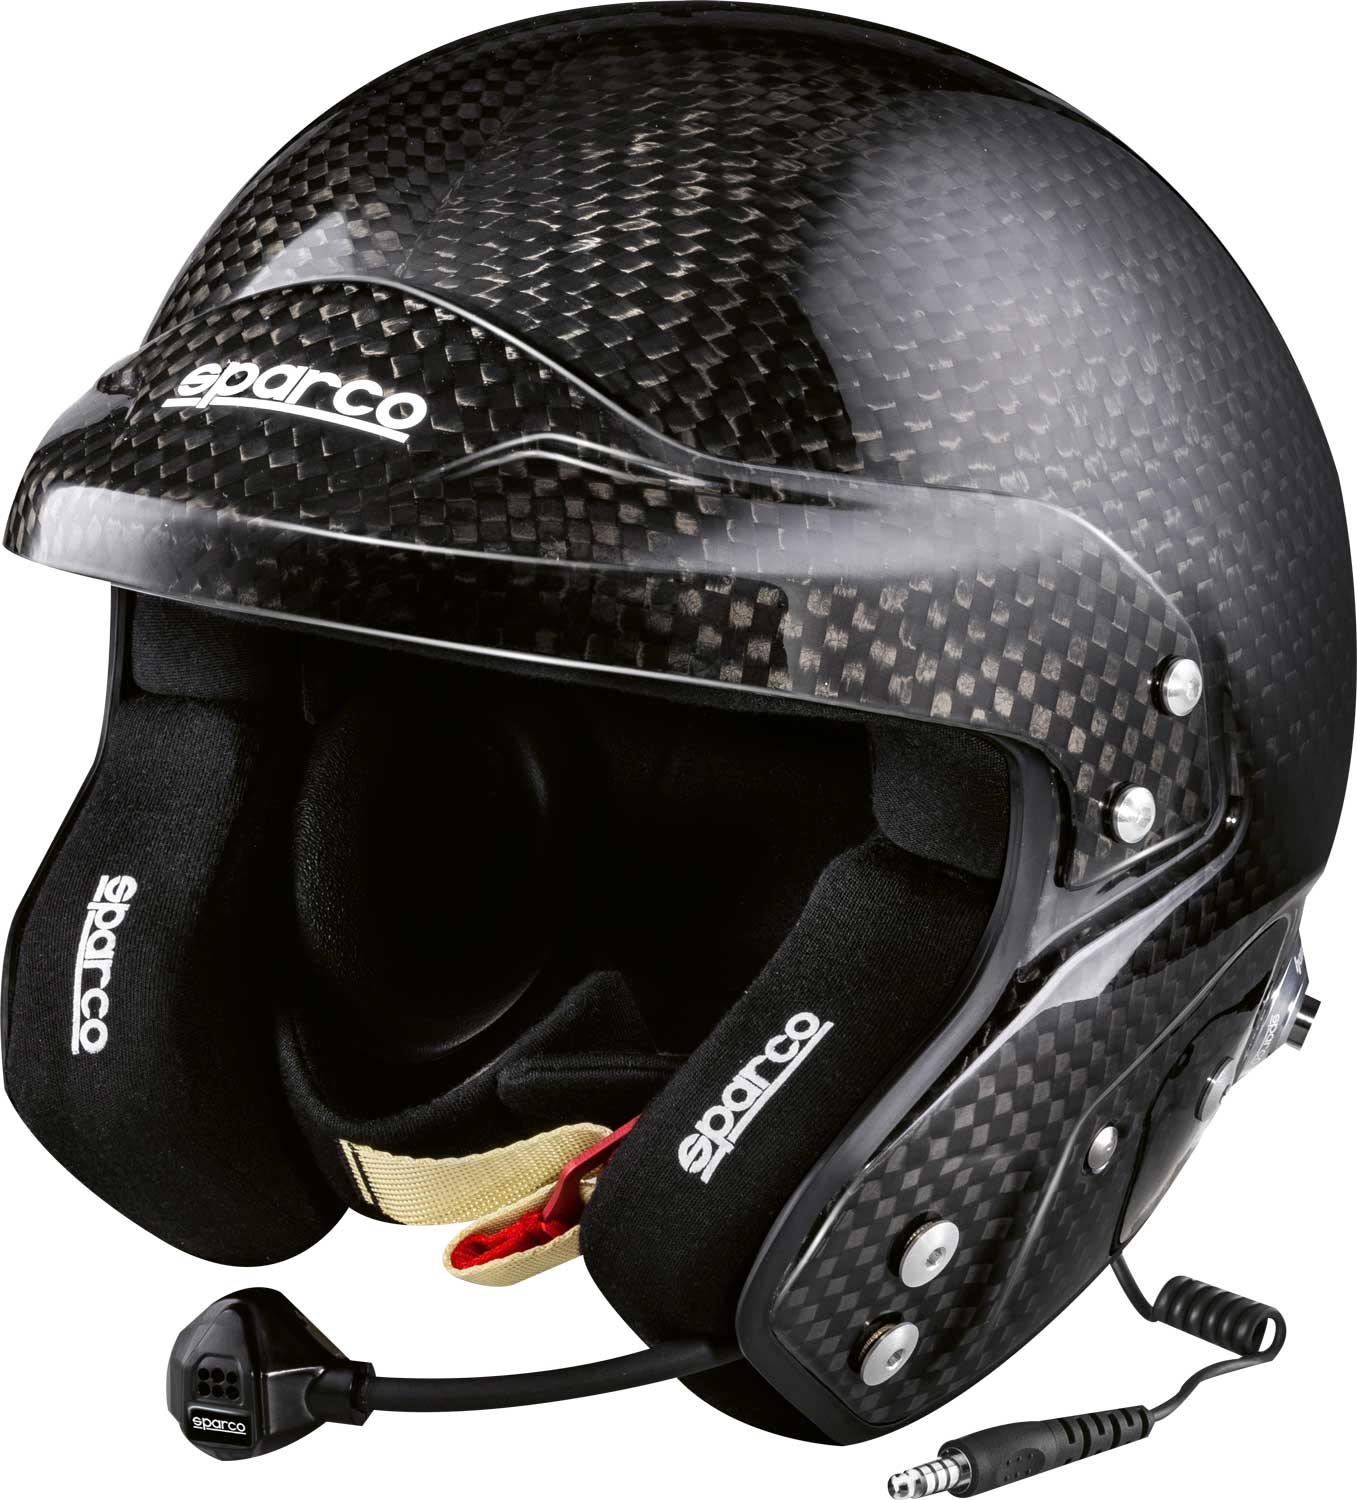 Sparco Helm Carbon 8860 J